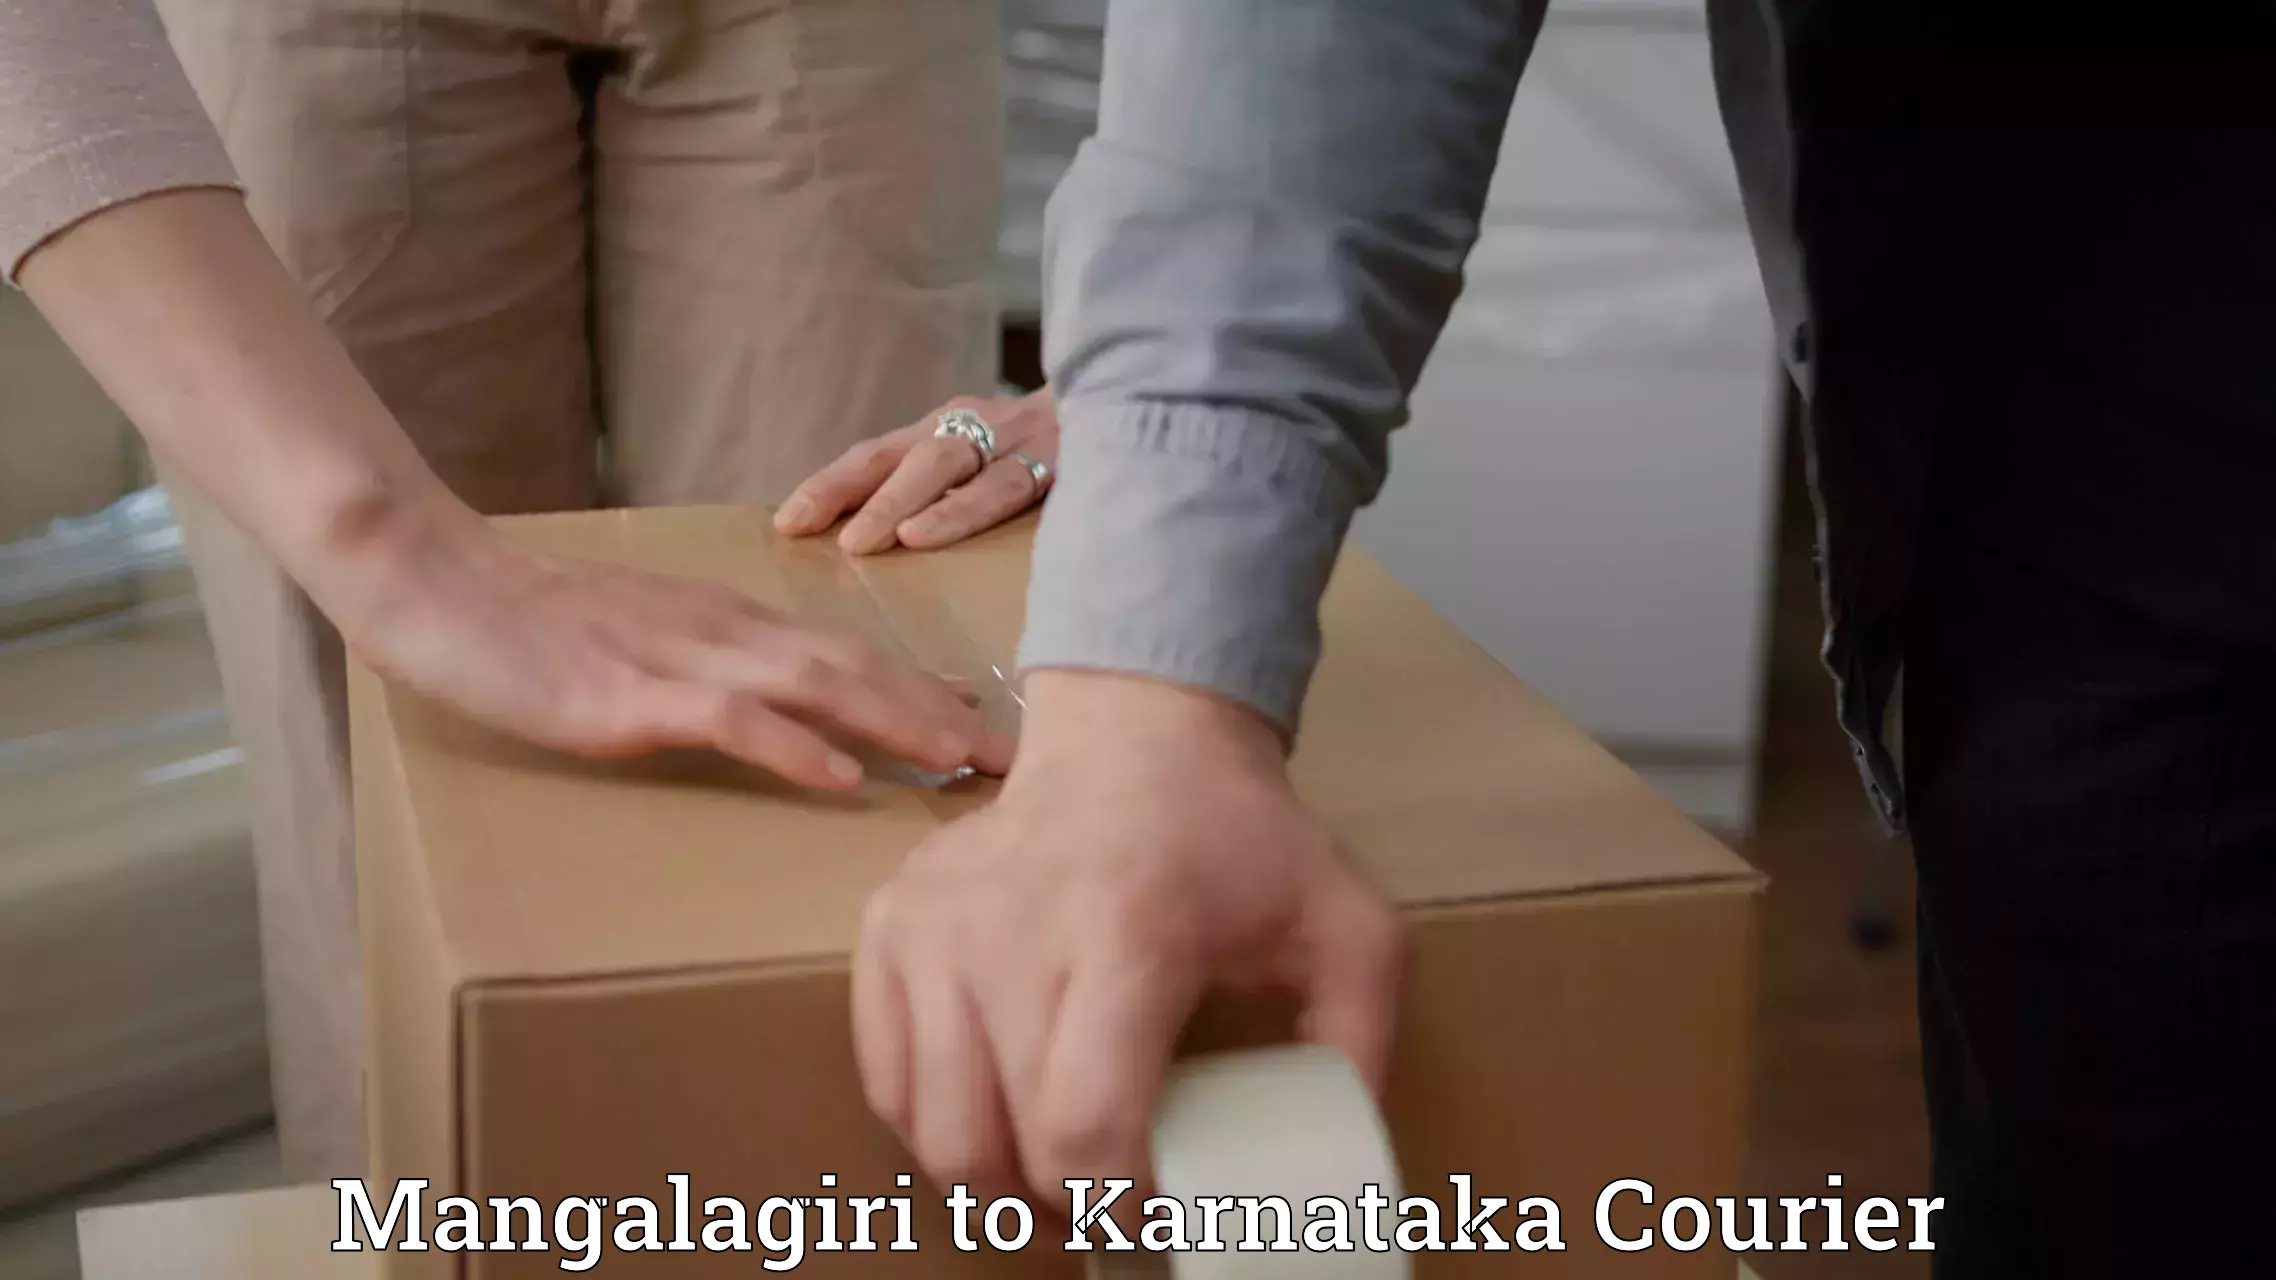 International courier rates Mangalagiri to Yenepoya Mangalore